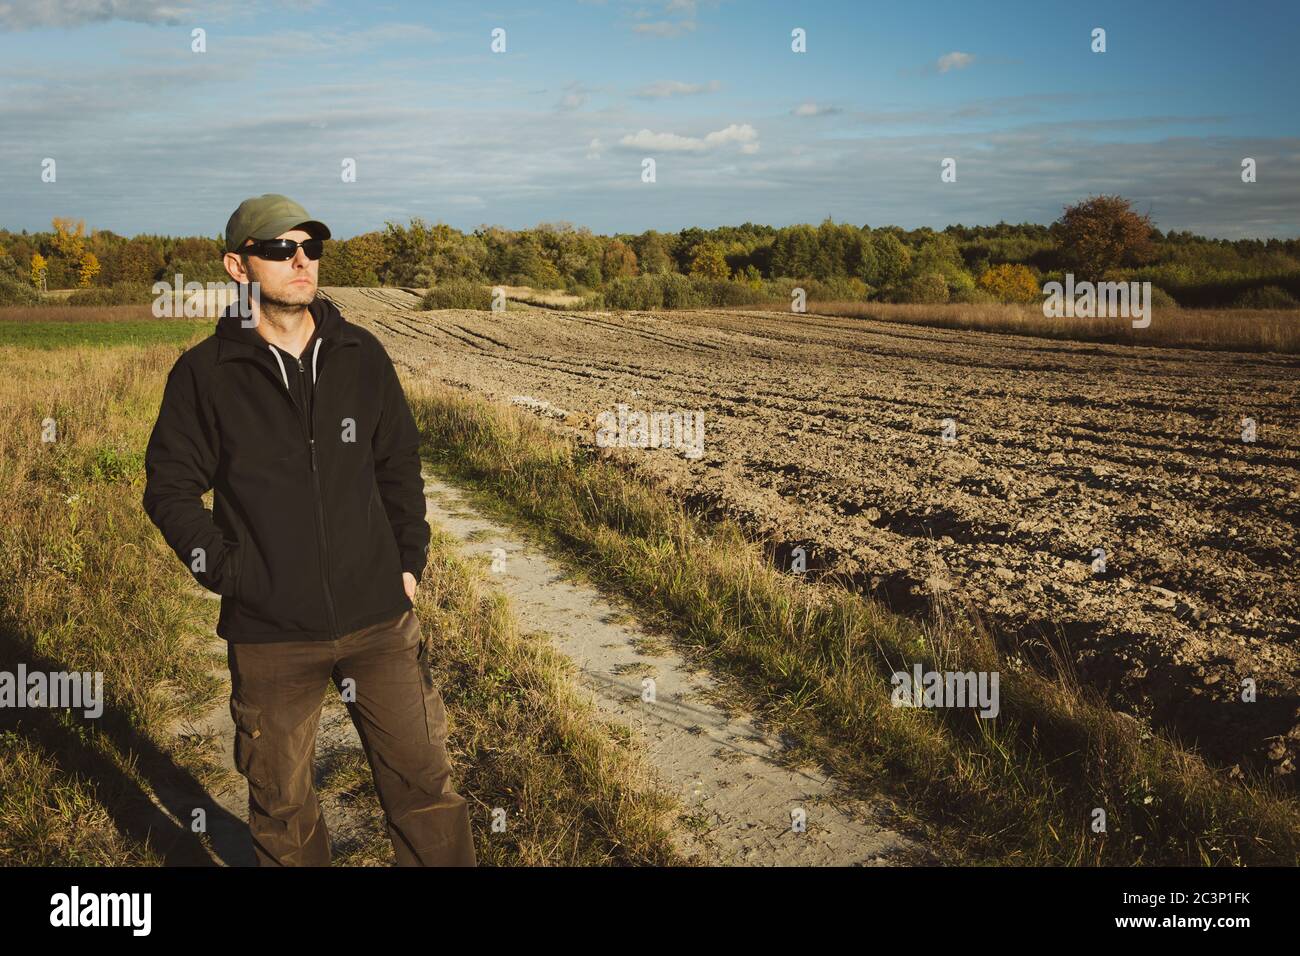 Un homme en lunettes de soleil debout près d'un champ labouré, vue rurale ensoleillée Banque D'Images